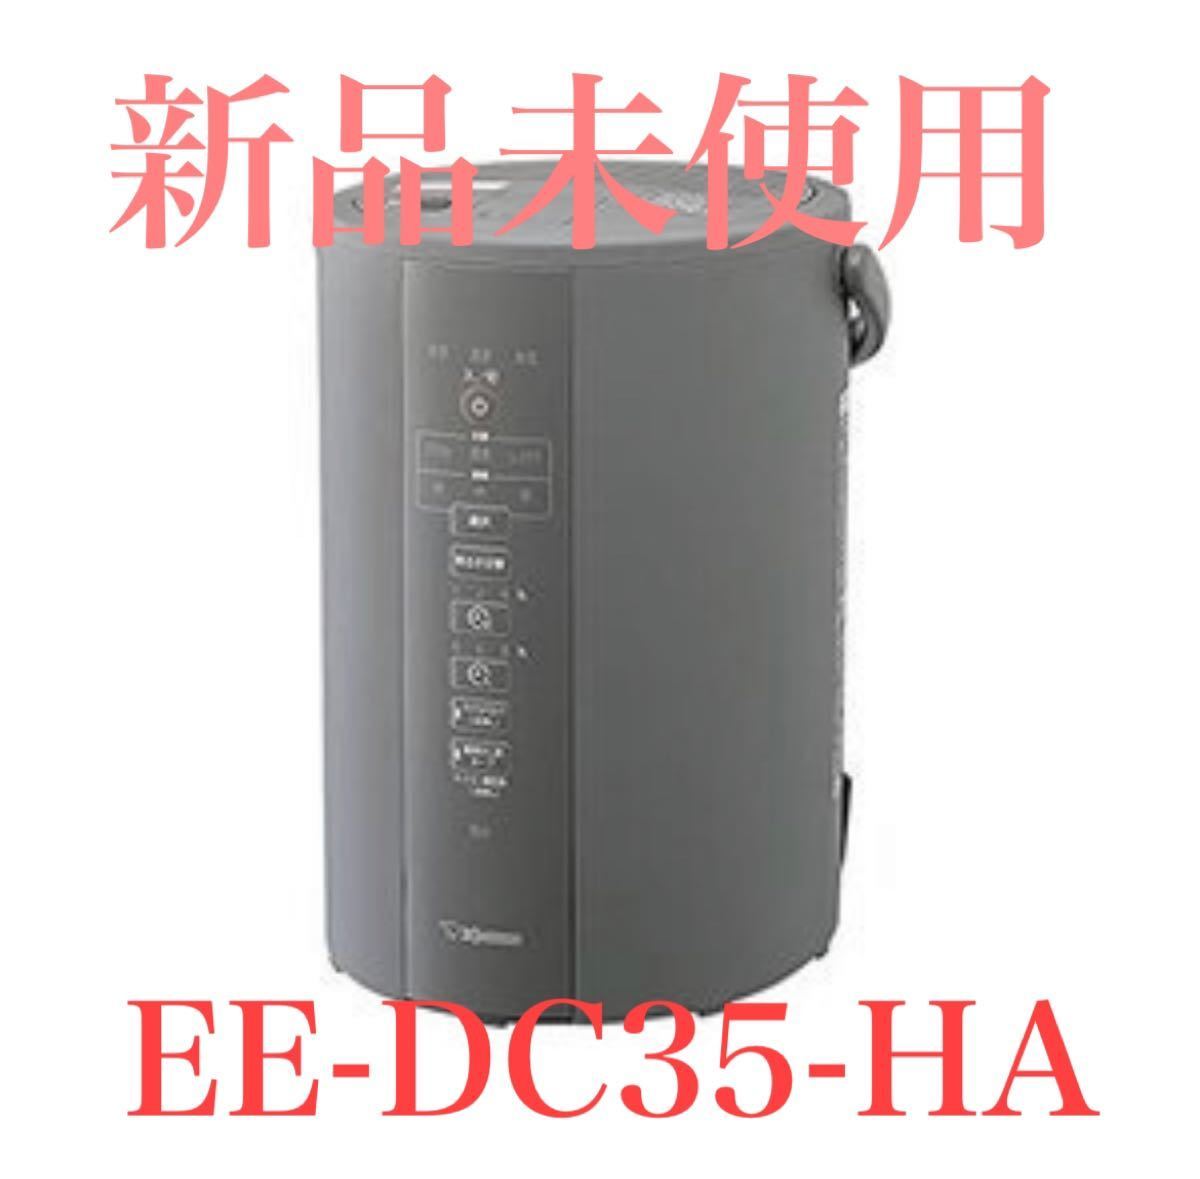 超美品の 象印3.0L スチーム式加湿器 ホワイト EE-DC35-WA aob.adv.br